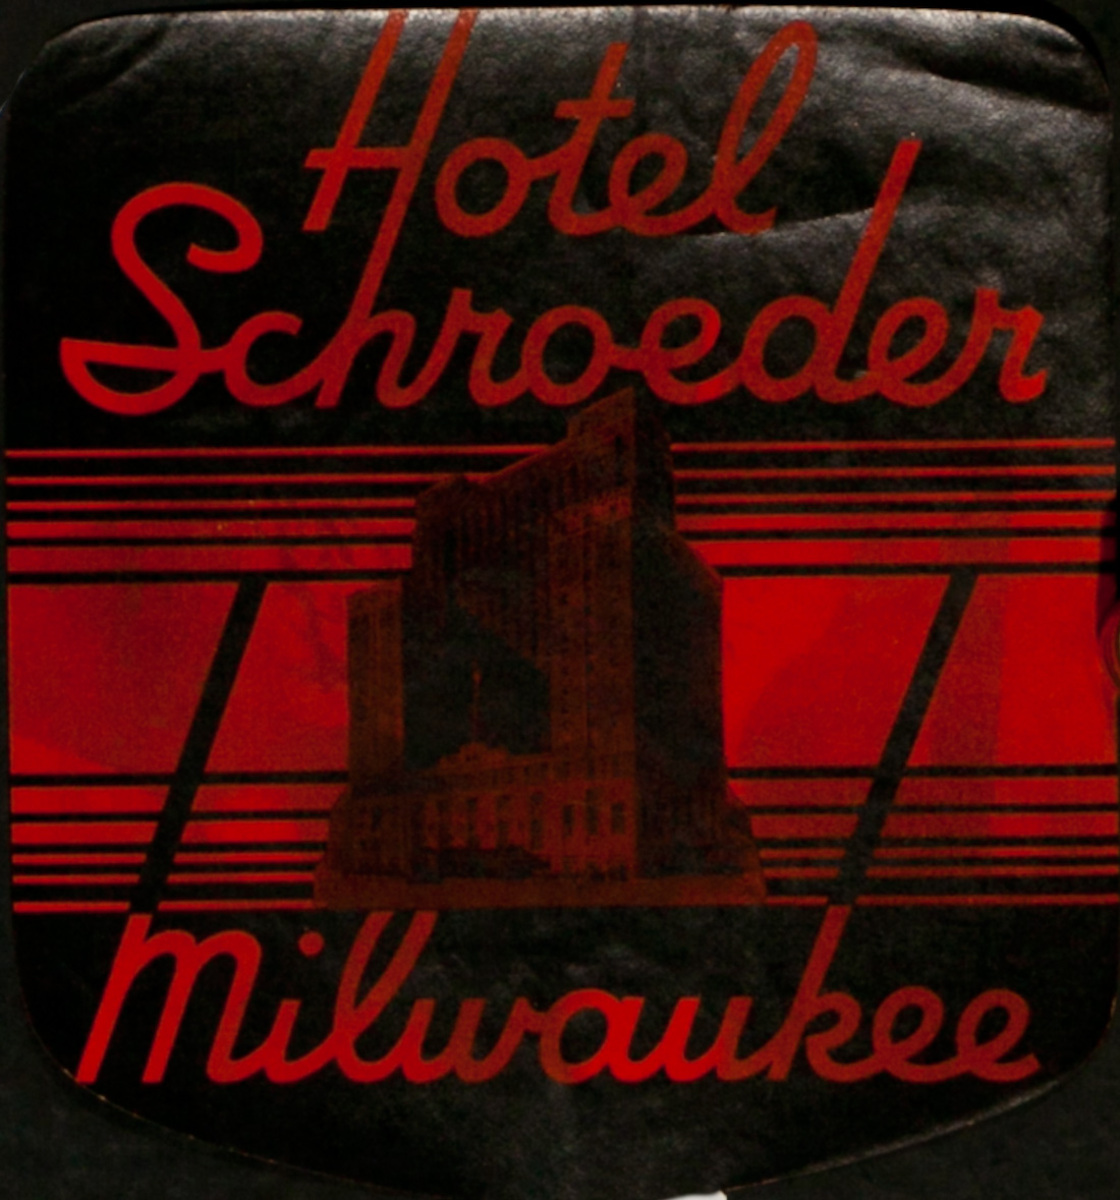 Hotel Schroeder Milwaukee, Original Luggage Label